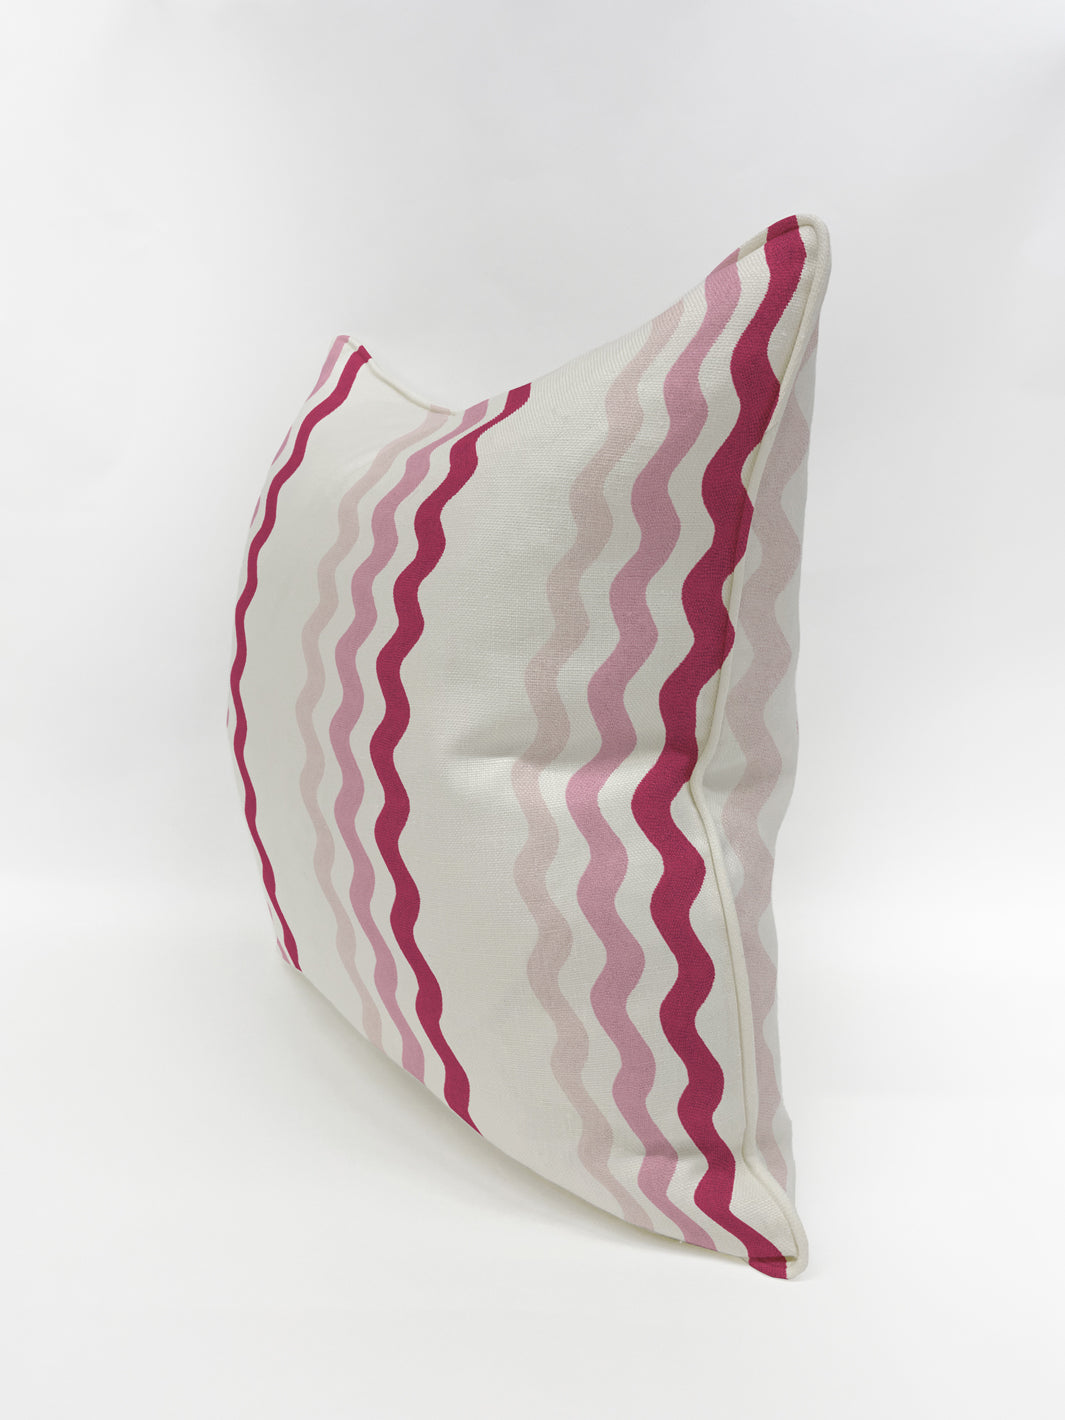 'Ric Rac Bands' Pillow by Sarah Jessica Parker - Pink Slipper Geranium on Linen